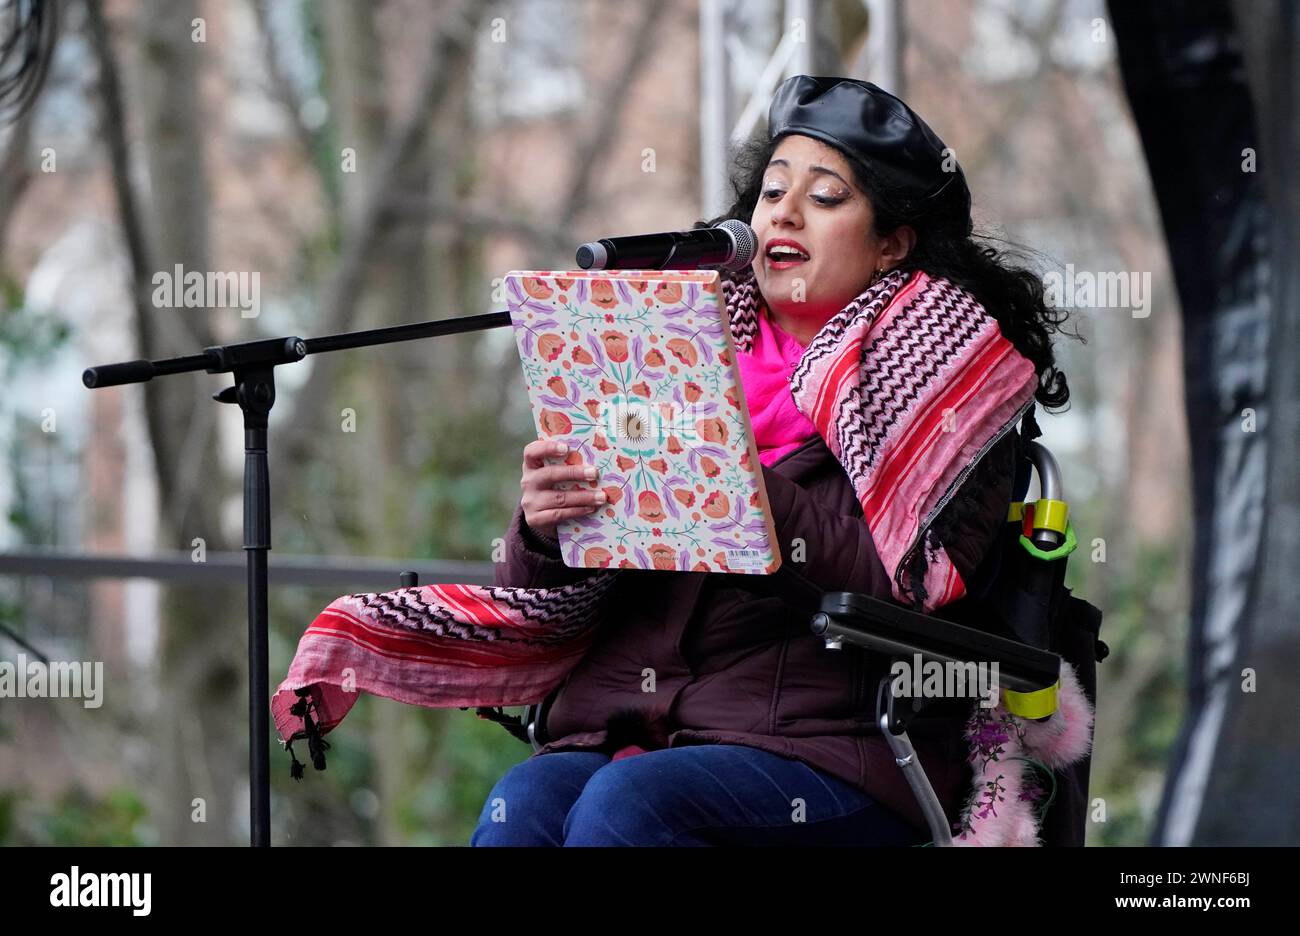 Maryam Madani von Disability Power Ireland spricht während des solidaritätsmarsches in Dublin. Die Demonstration wird durchgeführt, um die Unterstützung für Vielfalt und Gleichheit zu zeigen und Rassismus, Hass und Krieg anzuprangern. Bilddatum: Samstag, 2. März 2024. Stockfoto